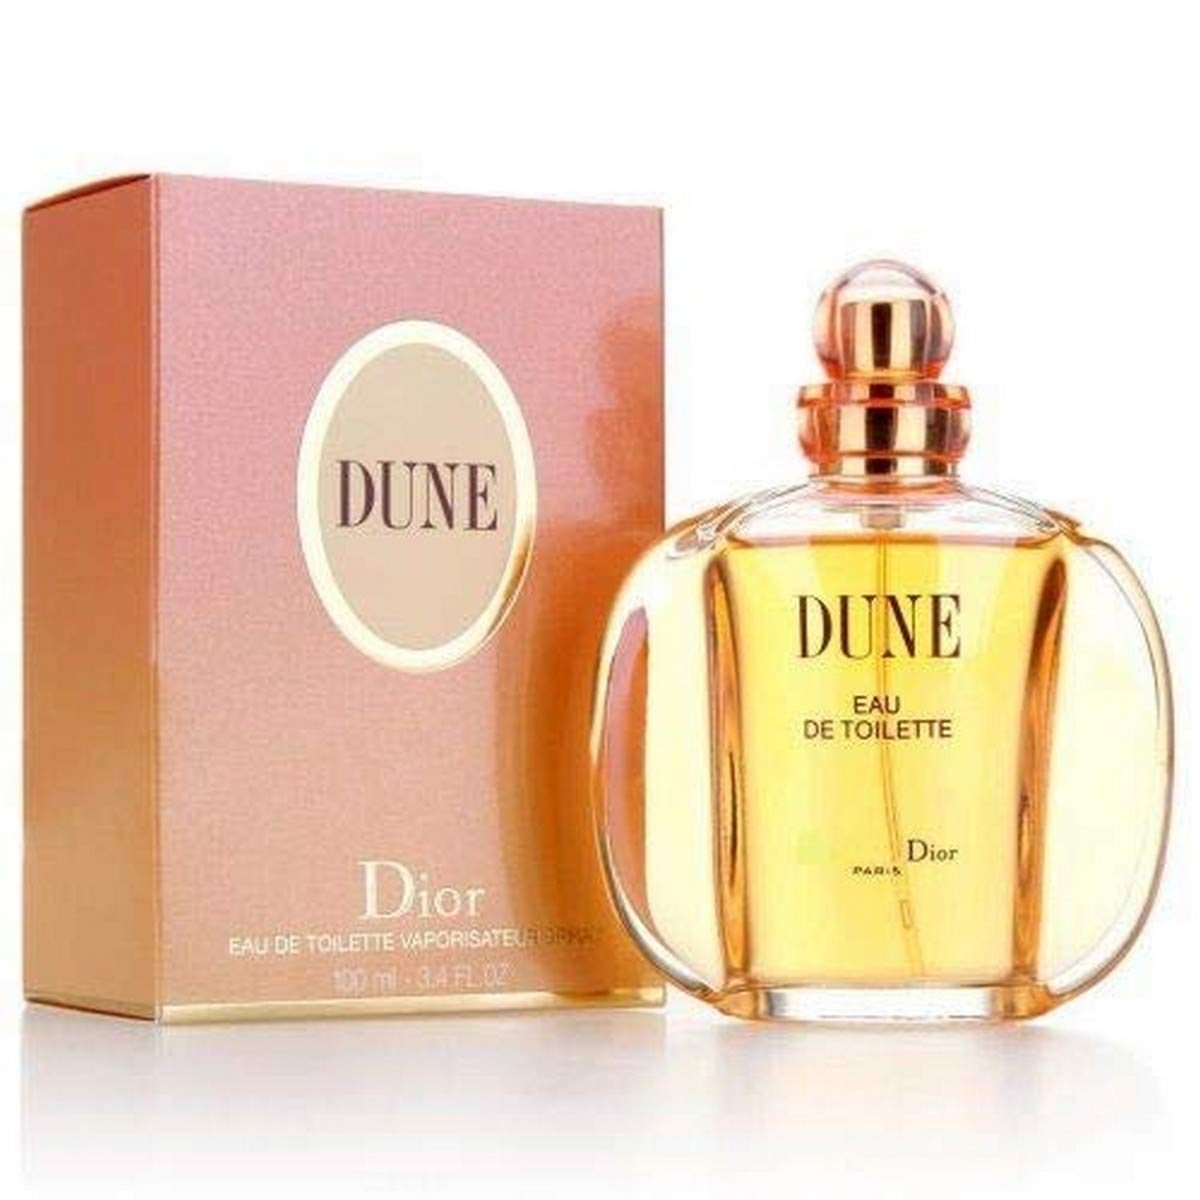 Christian Dior Dune For Women Eau De Toilette 100ml at Ratans Online Shop - Perfumes Wholesale and Retailer Fragrance